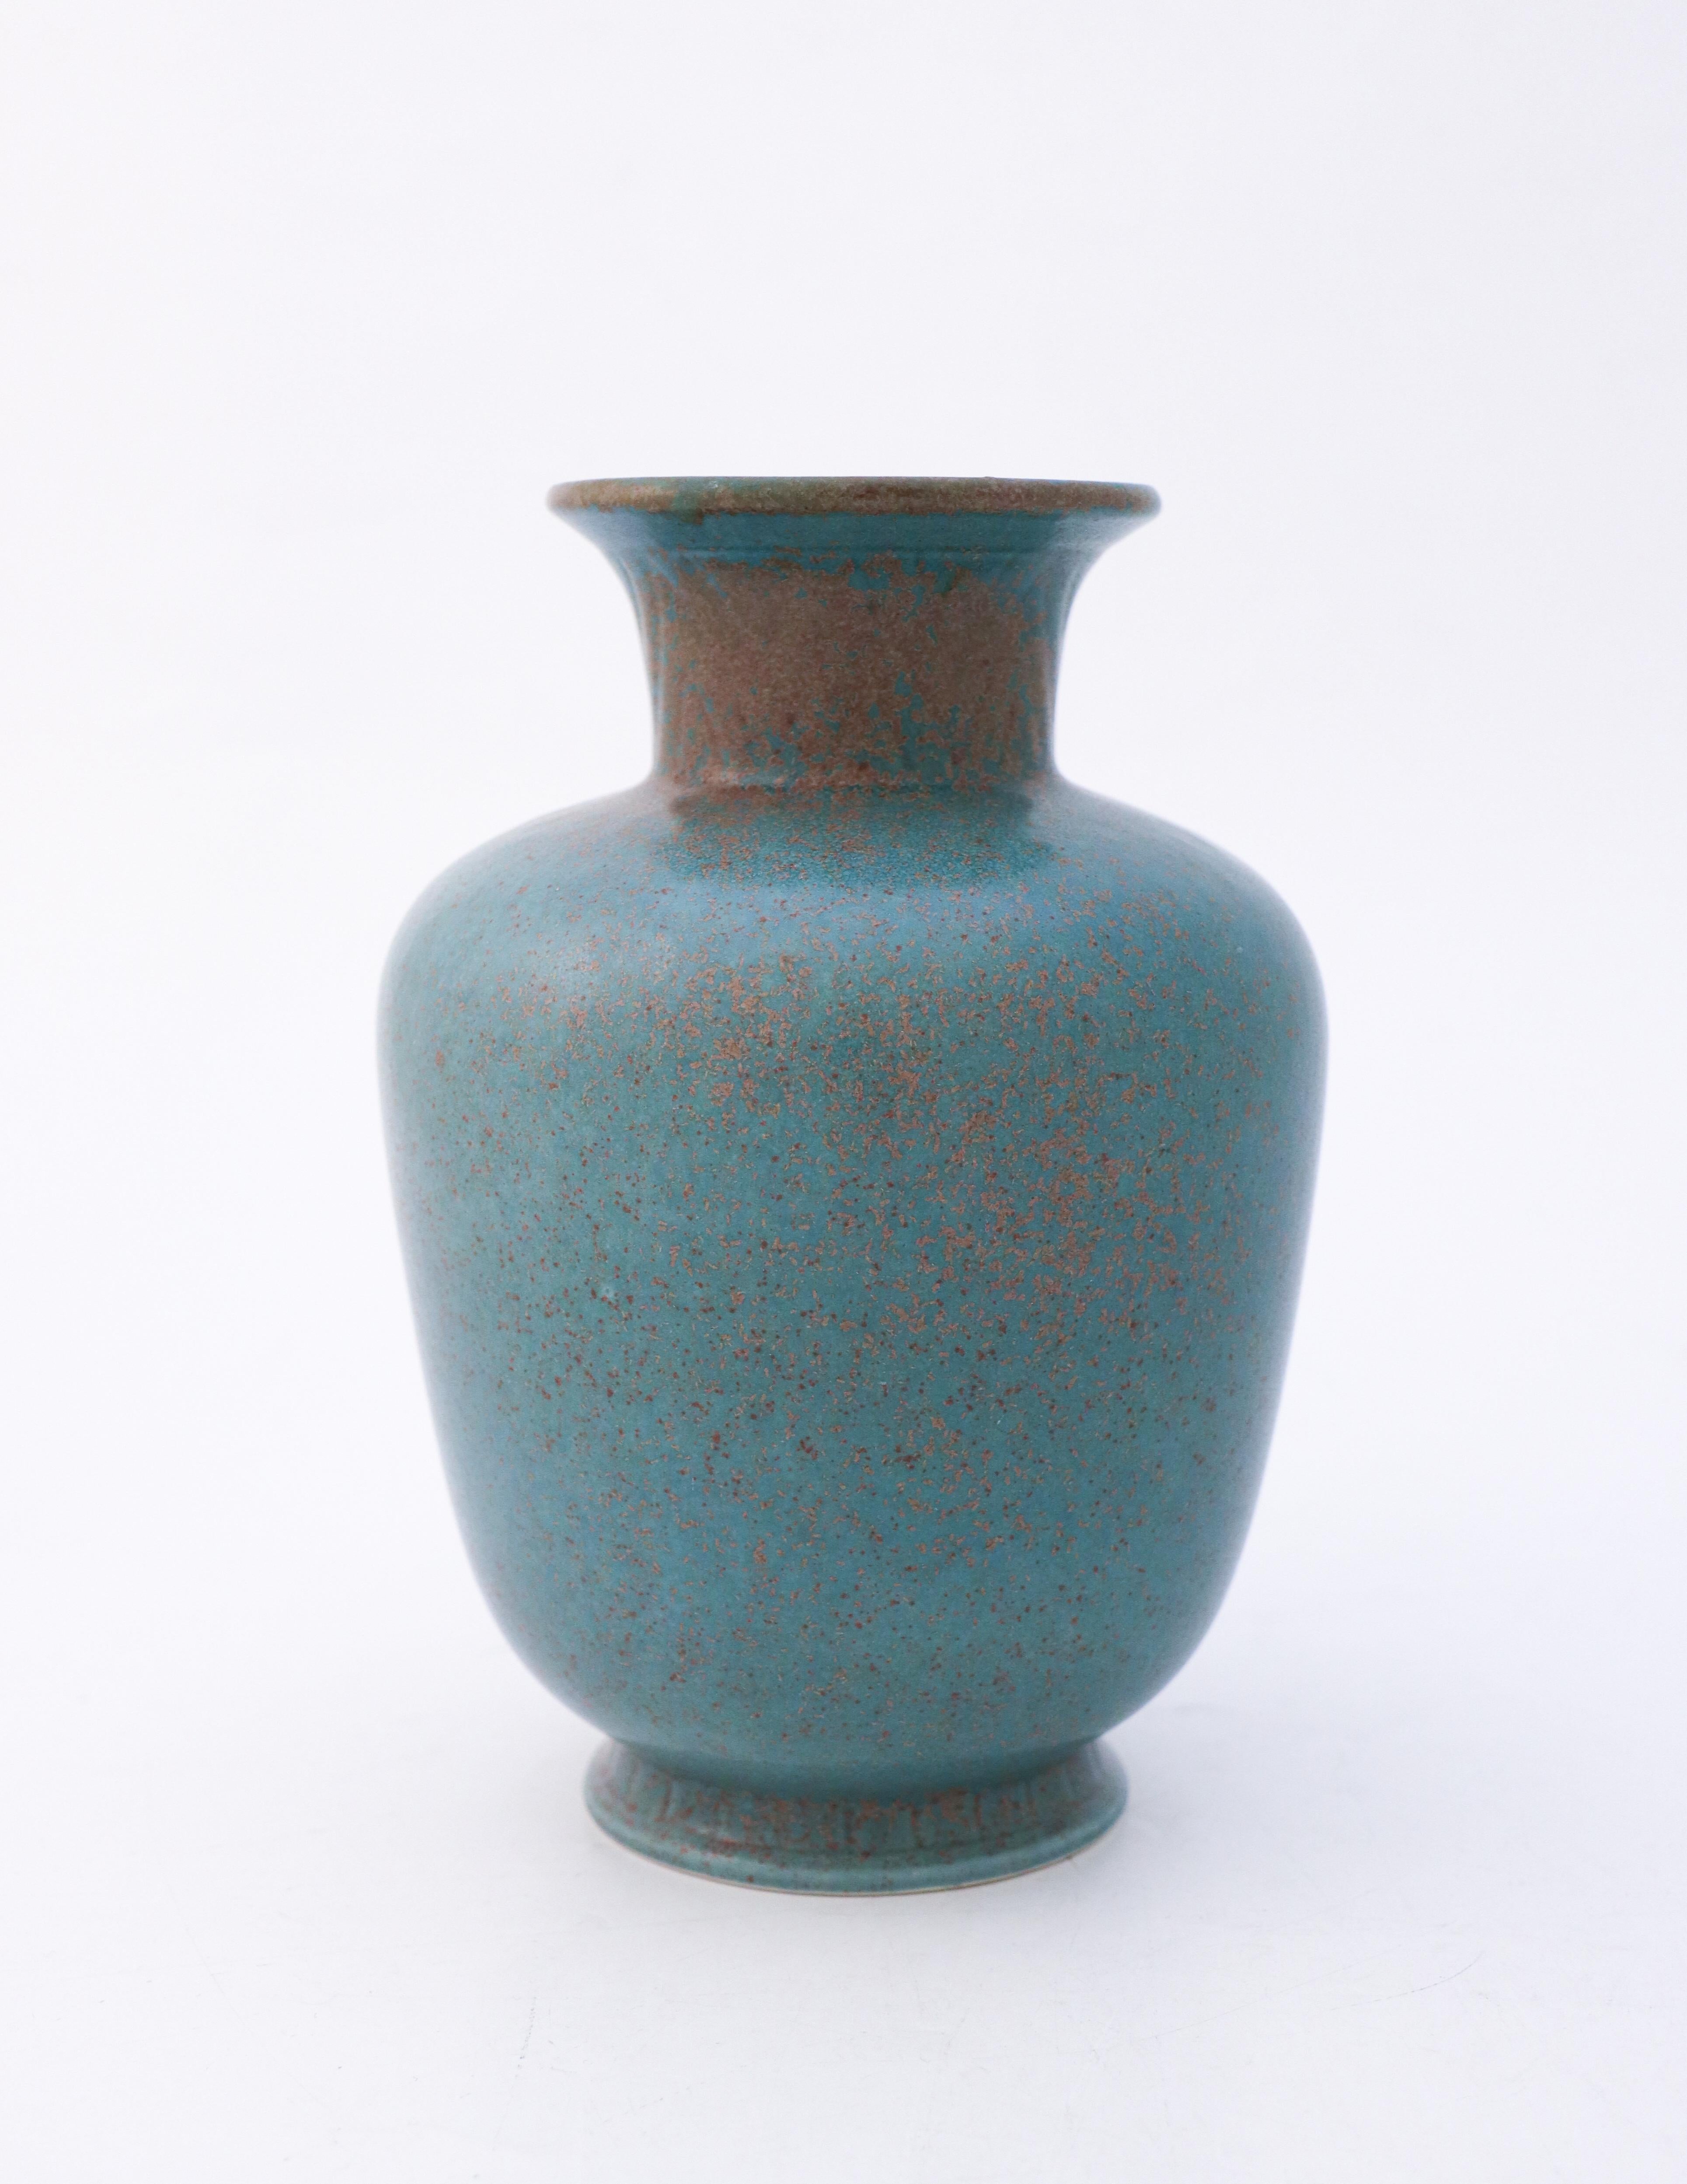 Eine Vase mit einer erstaunlichen grün / dunkel türkis gesprenkelten Glasur. Dies ist eine der beliebtesten Glasuren auf Gunnar Nylunds Keramiken. Die Vase wurde von Gunnar Nylund in Rörstrand im 20. Jahrhundert entworfen. Die Vase ist 19 cm hoch